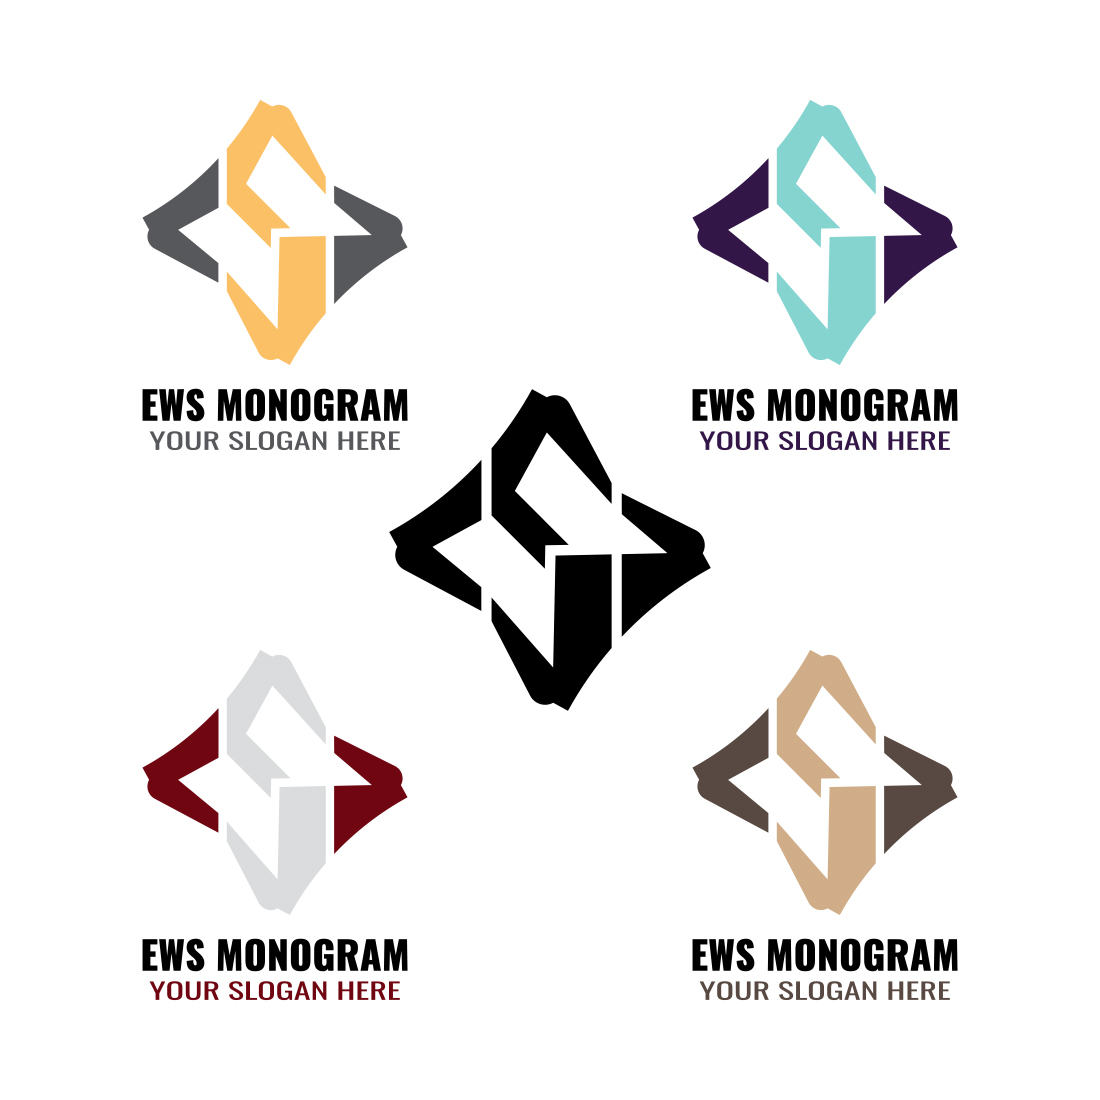 EWS Monogram Letter Logo Design cover image.